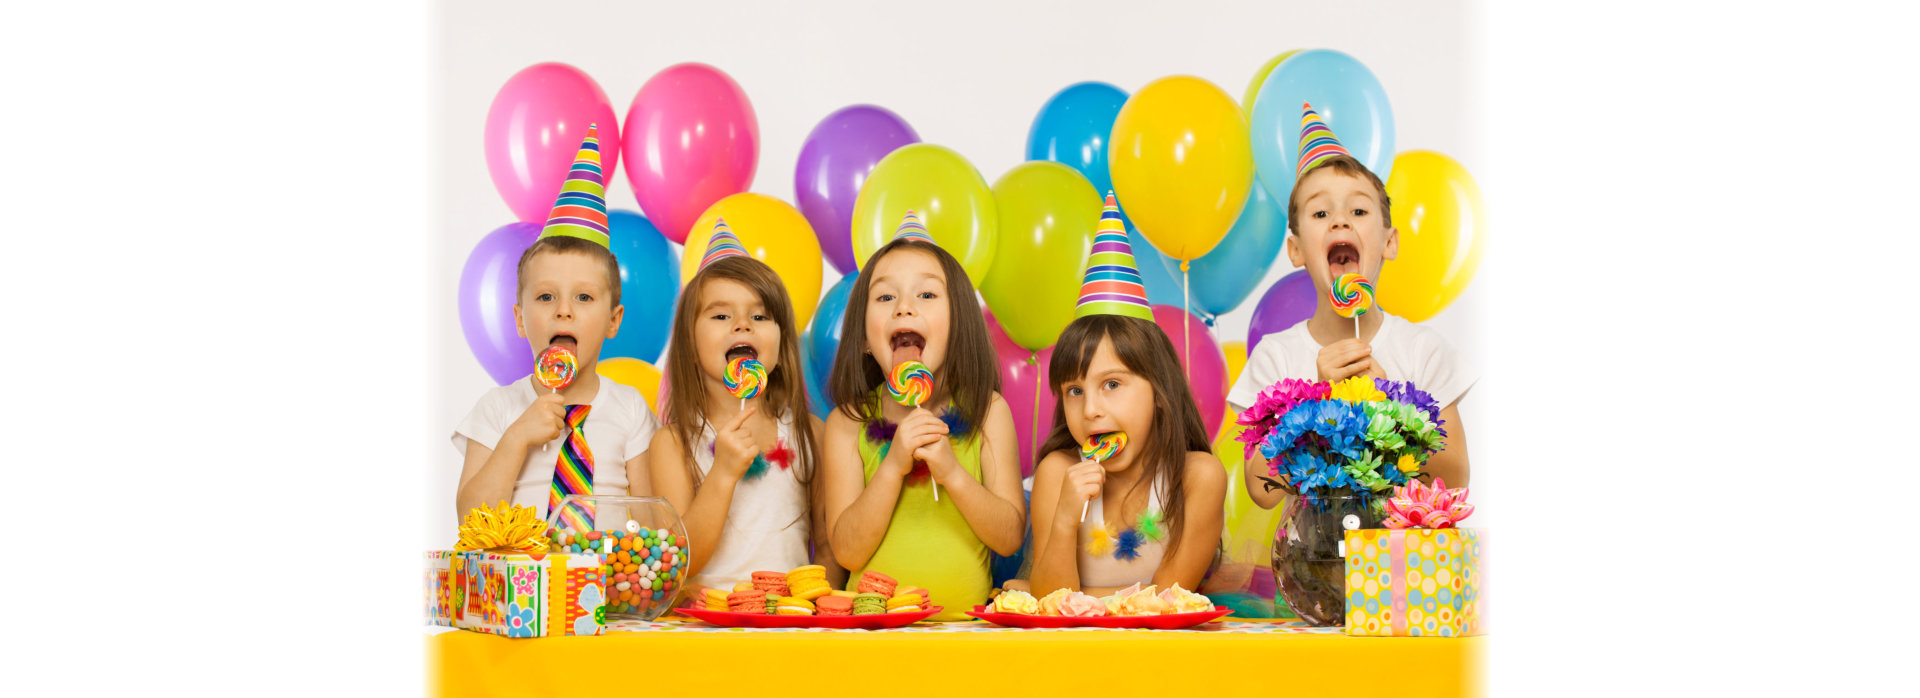 Group of joyful little kids having fun at birthday party.